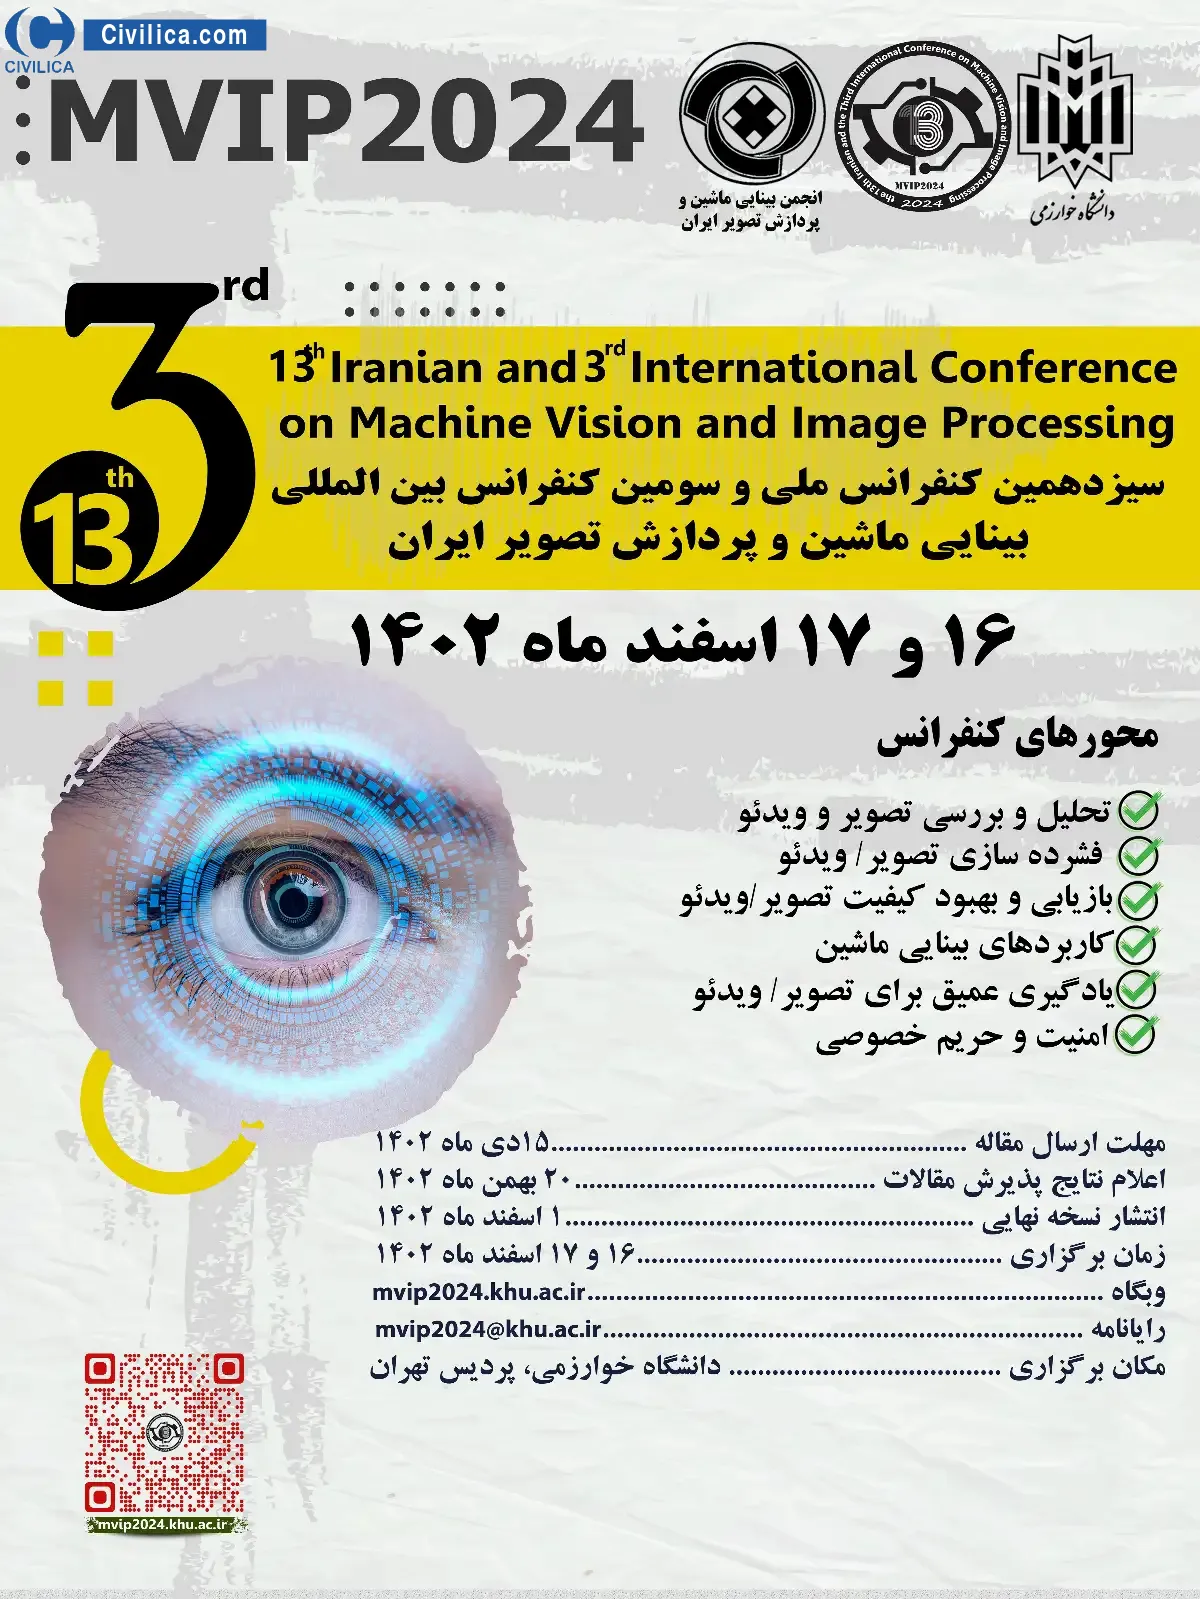 سیزدهمین کنفرانس ملی و سومین کنفرانس بین المللی بینایی ماشین و پردازش تصویر ایران